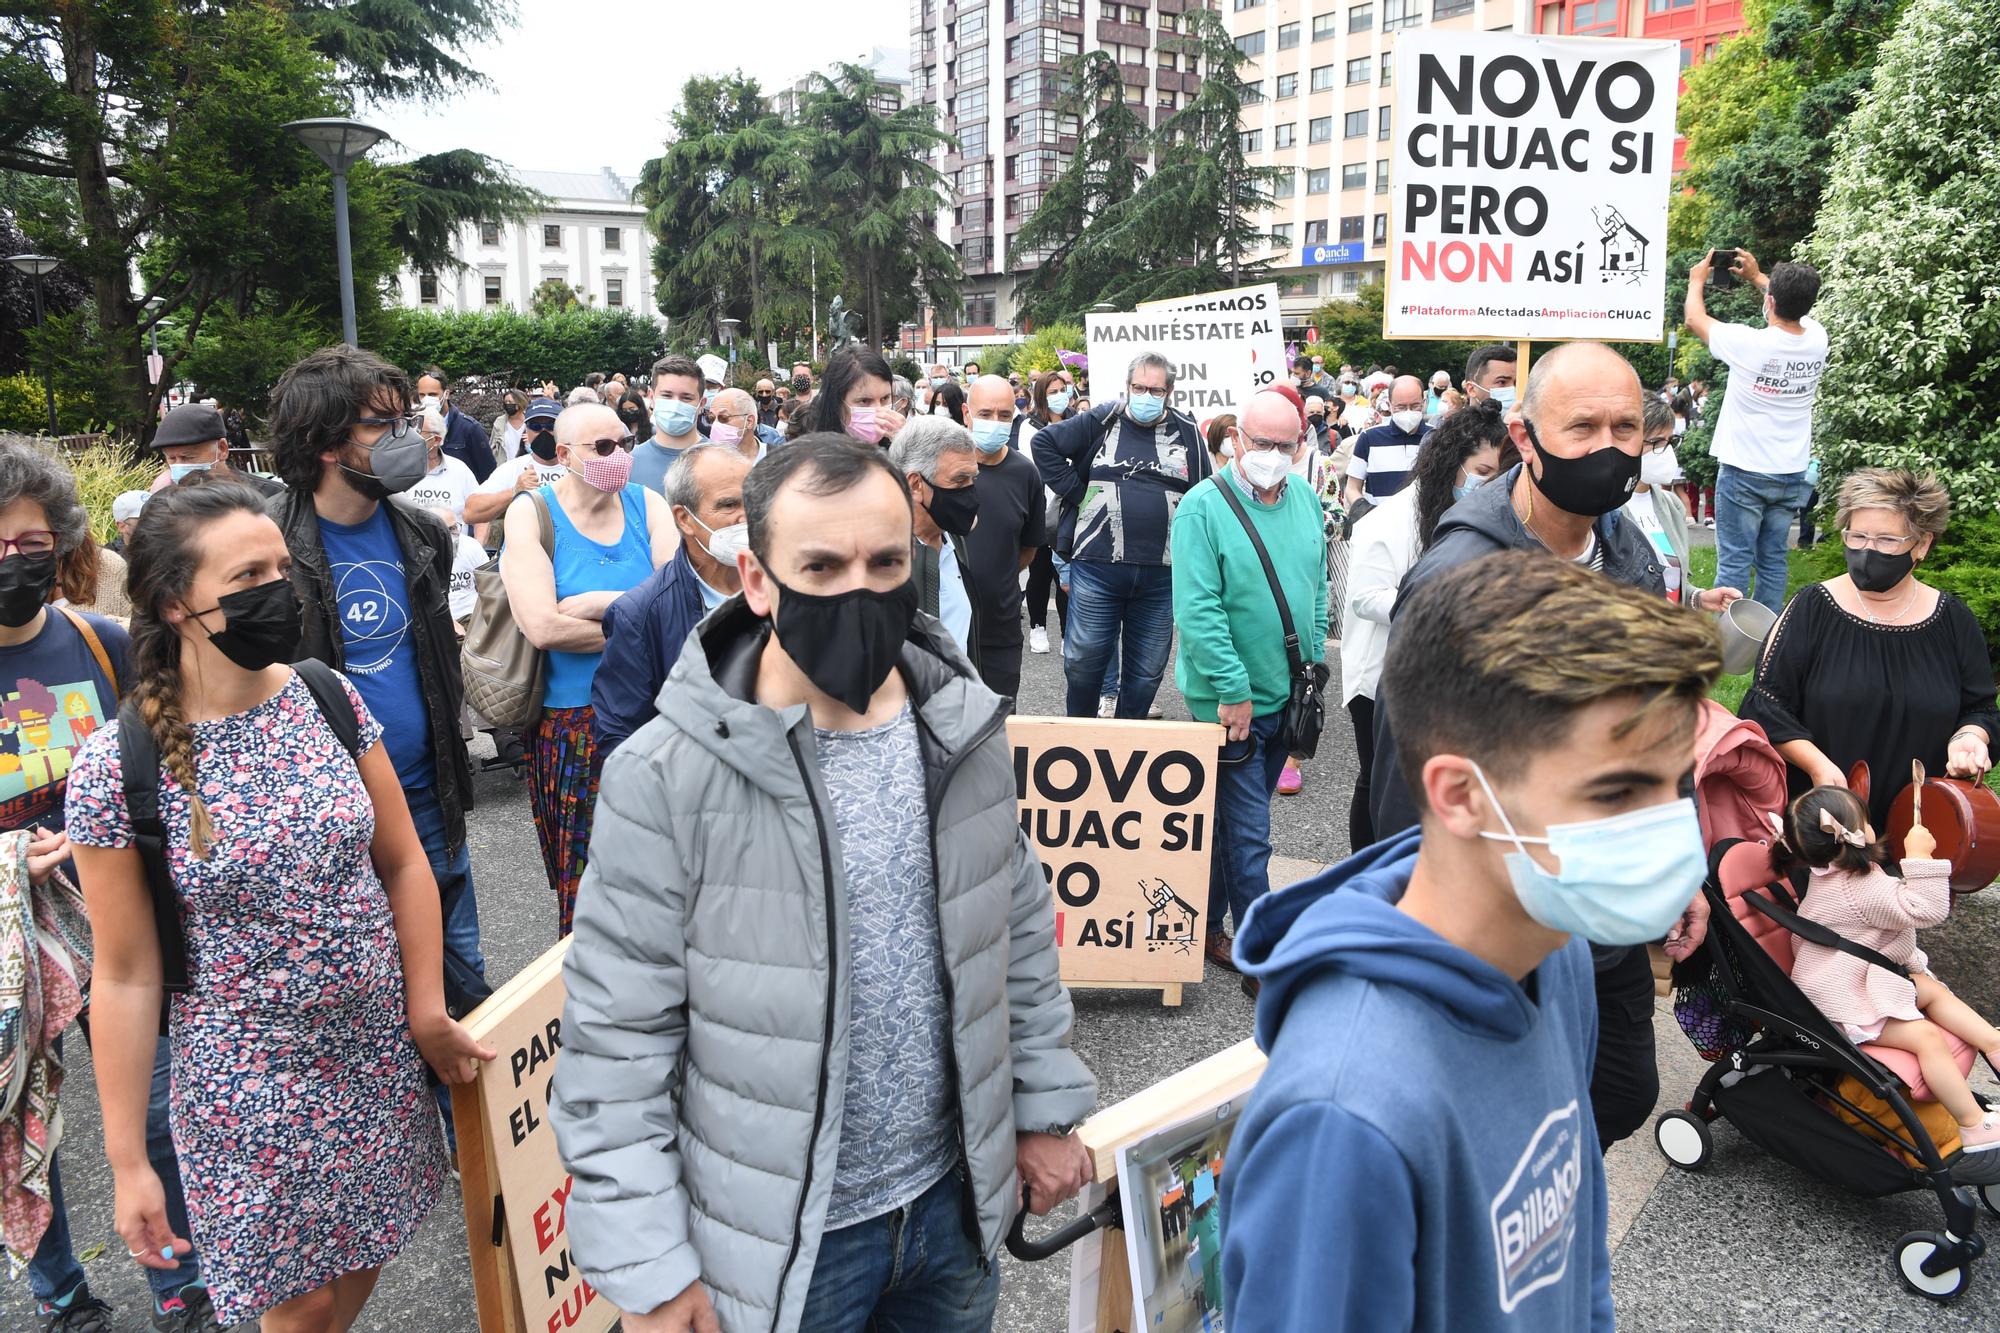 Manifestación en A Coruña para exigir un nuevo hospital